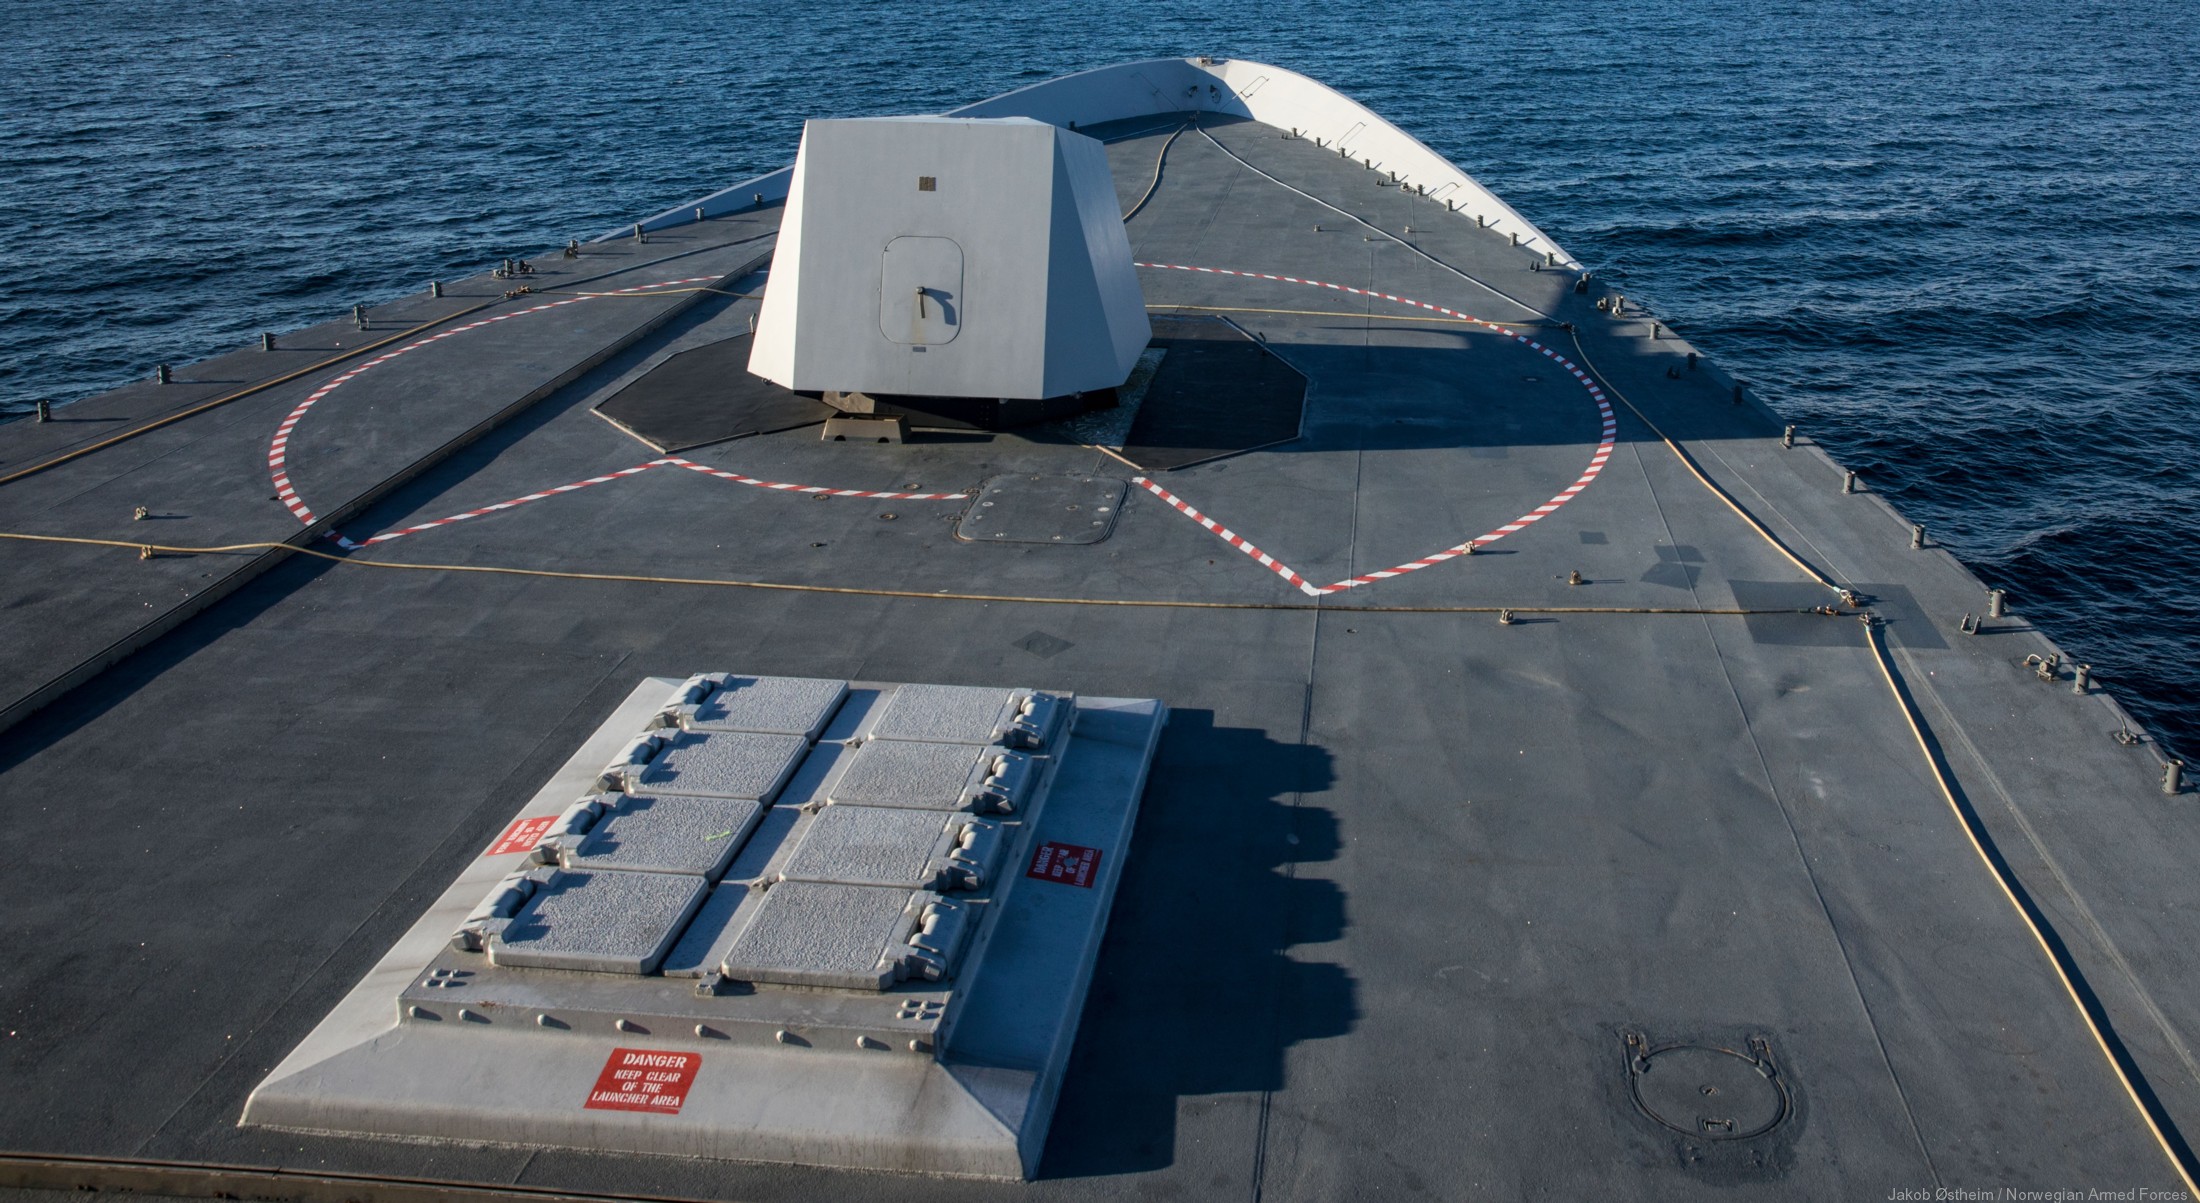 f-310 fridtjof nansen hnoms knm frigate royal norwegian navy sjoforsvaret 41 mk-41 vertical launching system vls